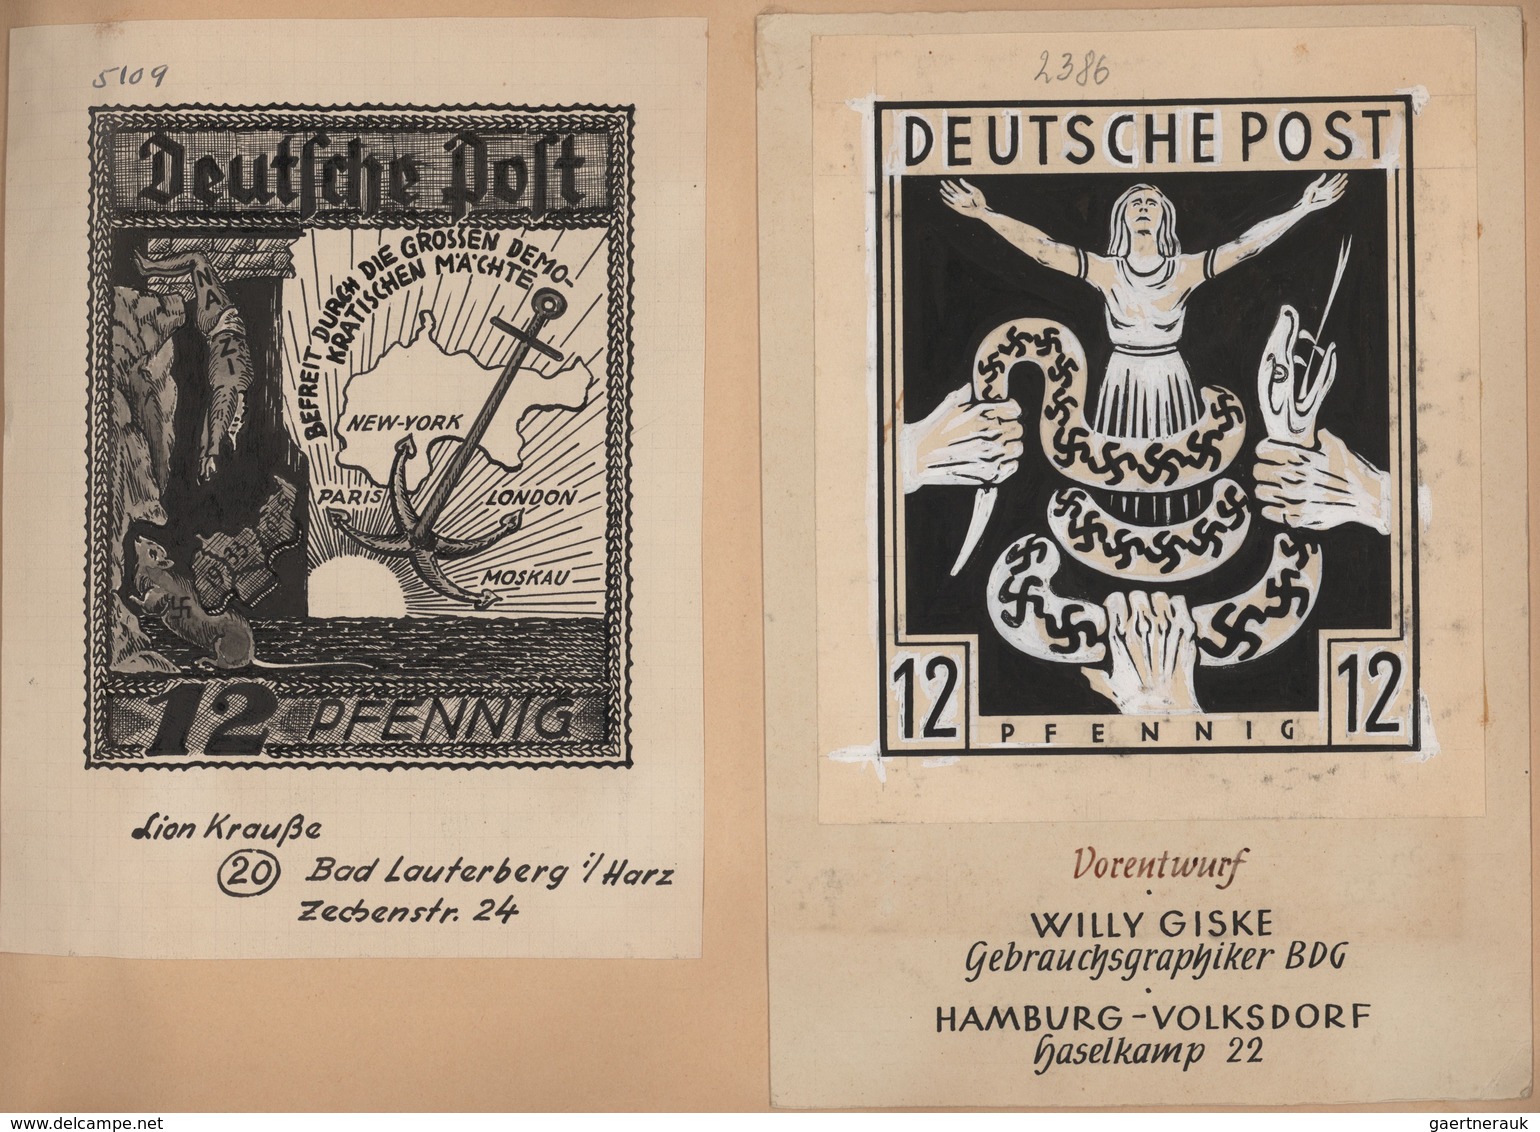 Deutschland nach 1945: 1945/46, ENTWÜRFE, Sammlung von gesamt 191 mehr oder minder kunstvollen Entwü